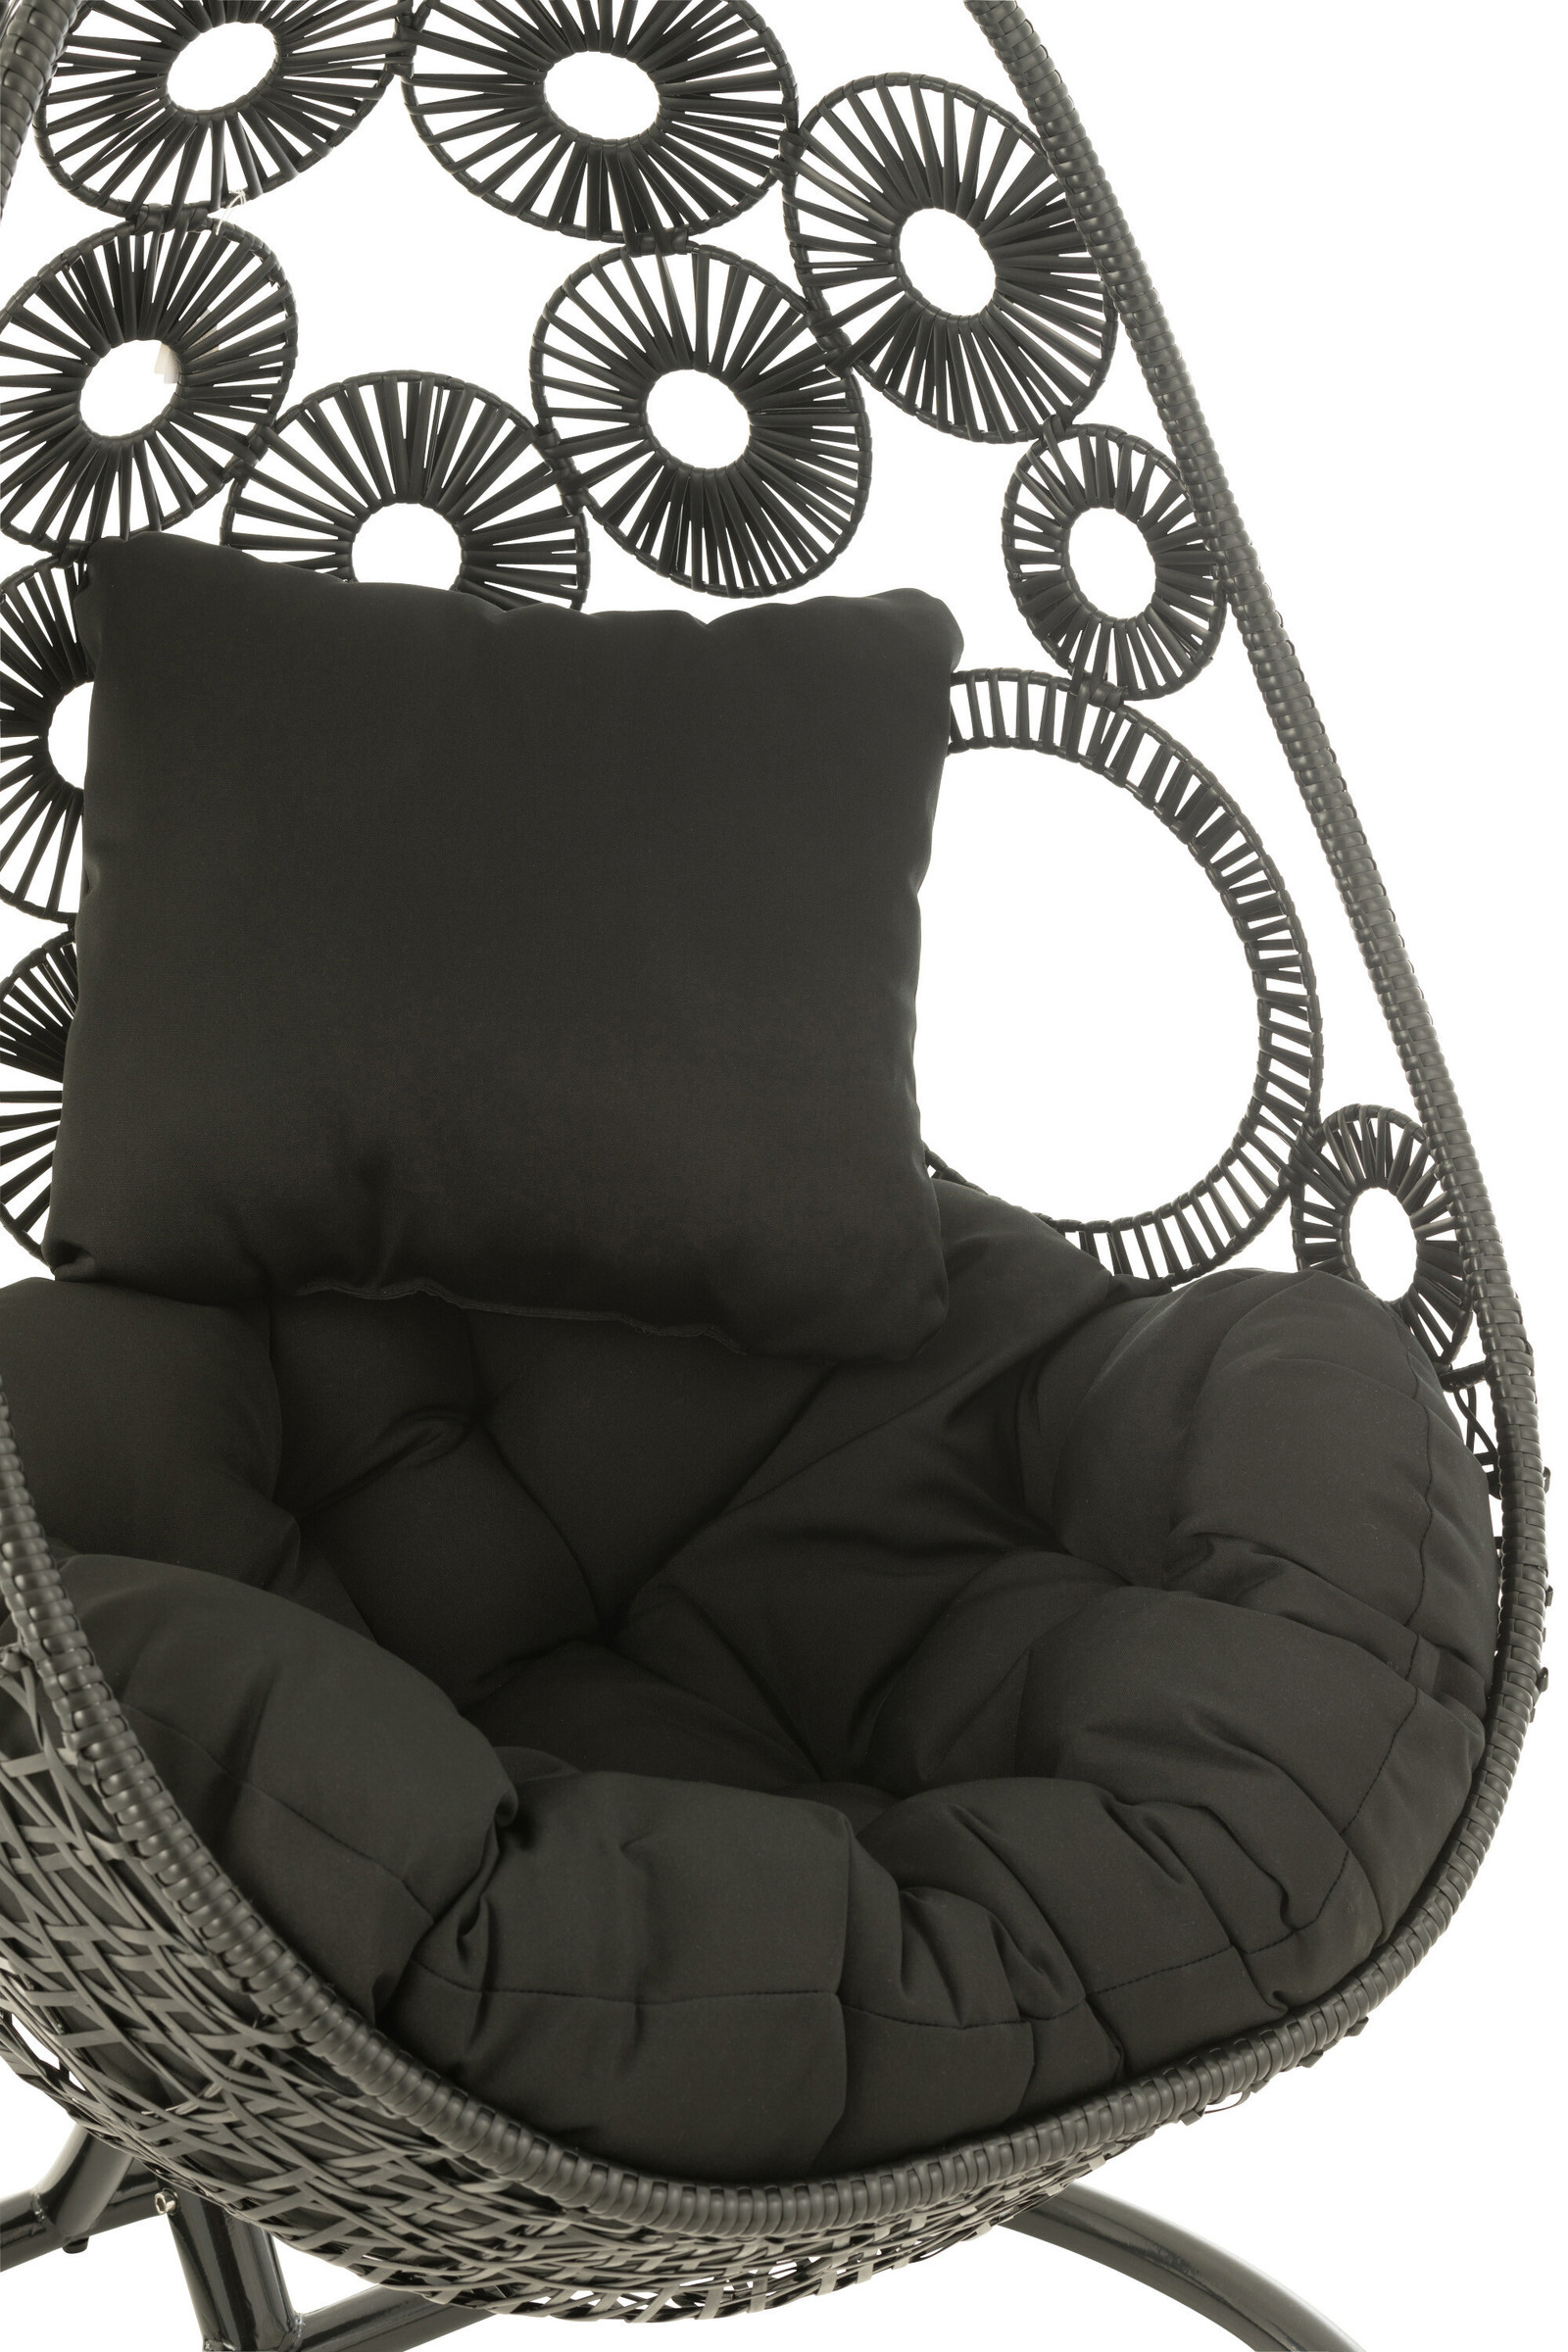 Ohuhu Chaise hamac avec matériel de fixation, chaise suspendue portable XL  avec coussins, kit d'installation amovible, barre de support en métal